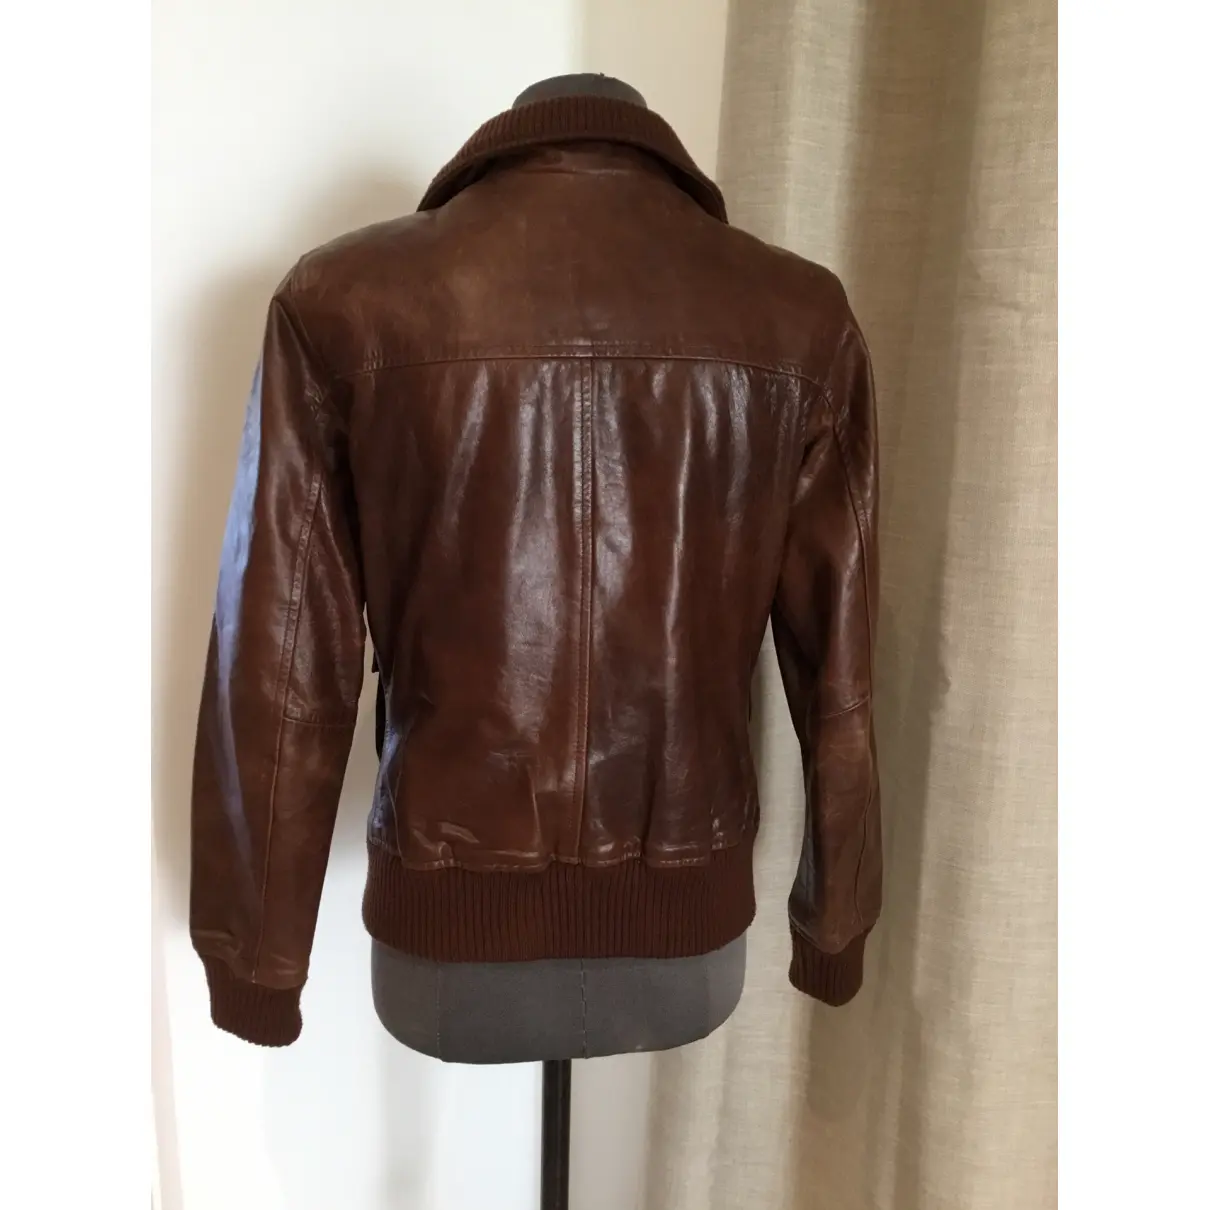 Luxury Bellerose Leather jackets Women